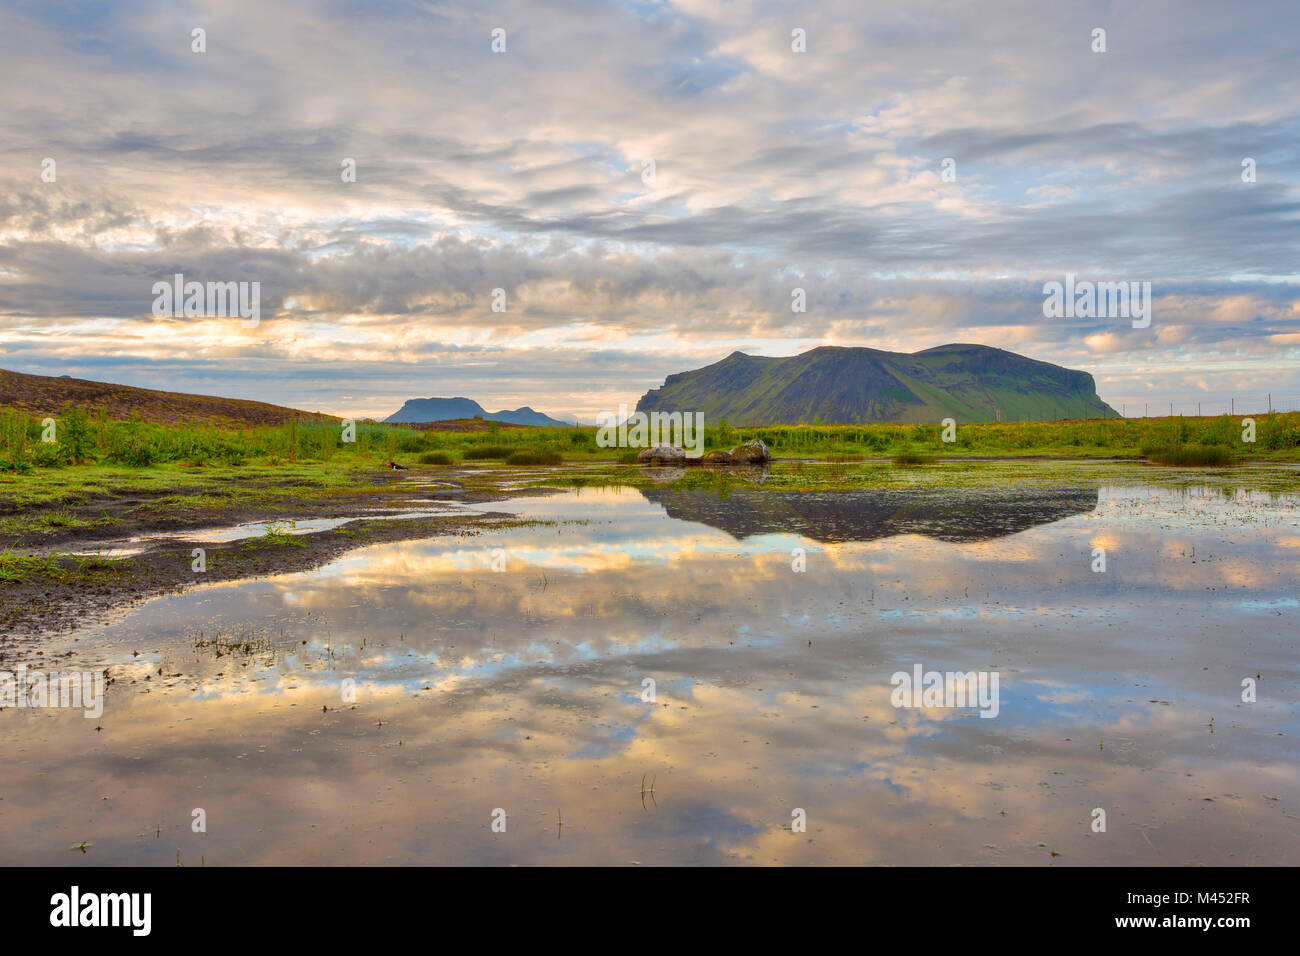 Reflet de nuages dans l'eau, Sudurland, Sud de l'Islande, Islande Banque D'Images